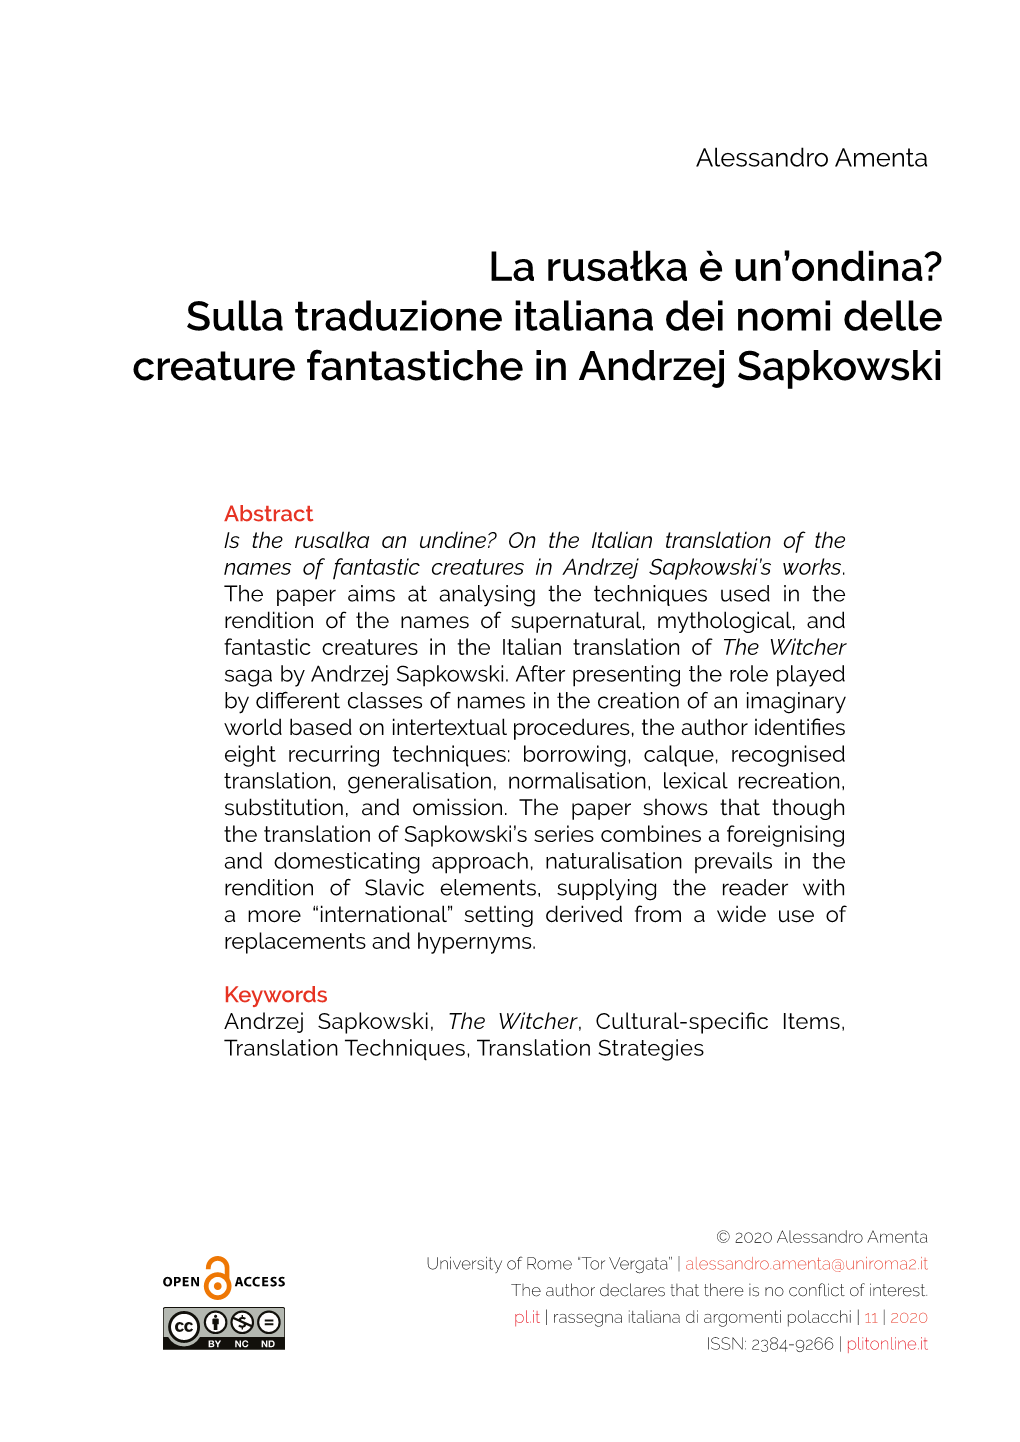 Sulla Traduzione Italiana Dei Nomi Delle Creature Fantastiche in Andrzej Sapkowski